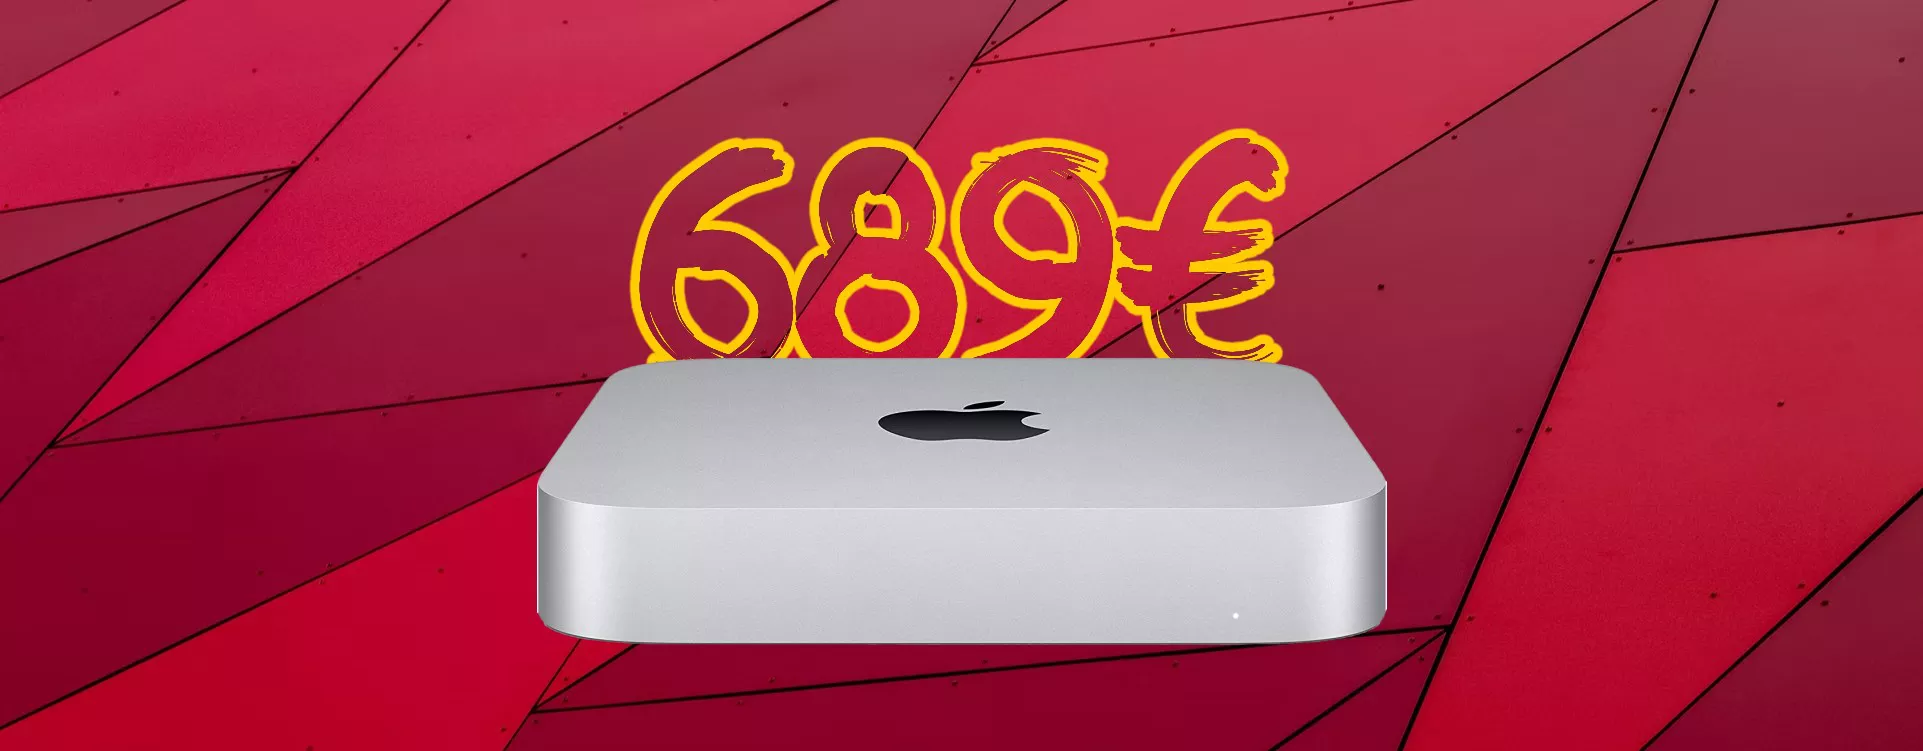 Mac Mini con chip M1 e 8/256GB: SUPER SCONTO di 130 euro!